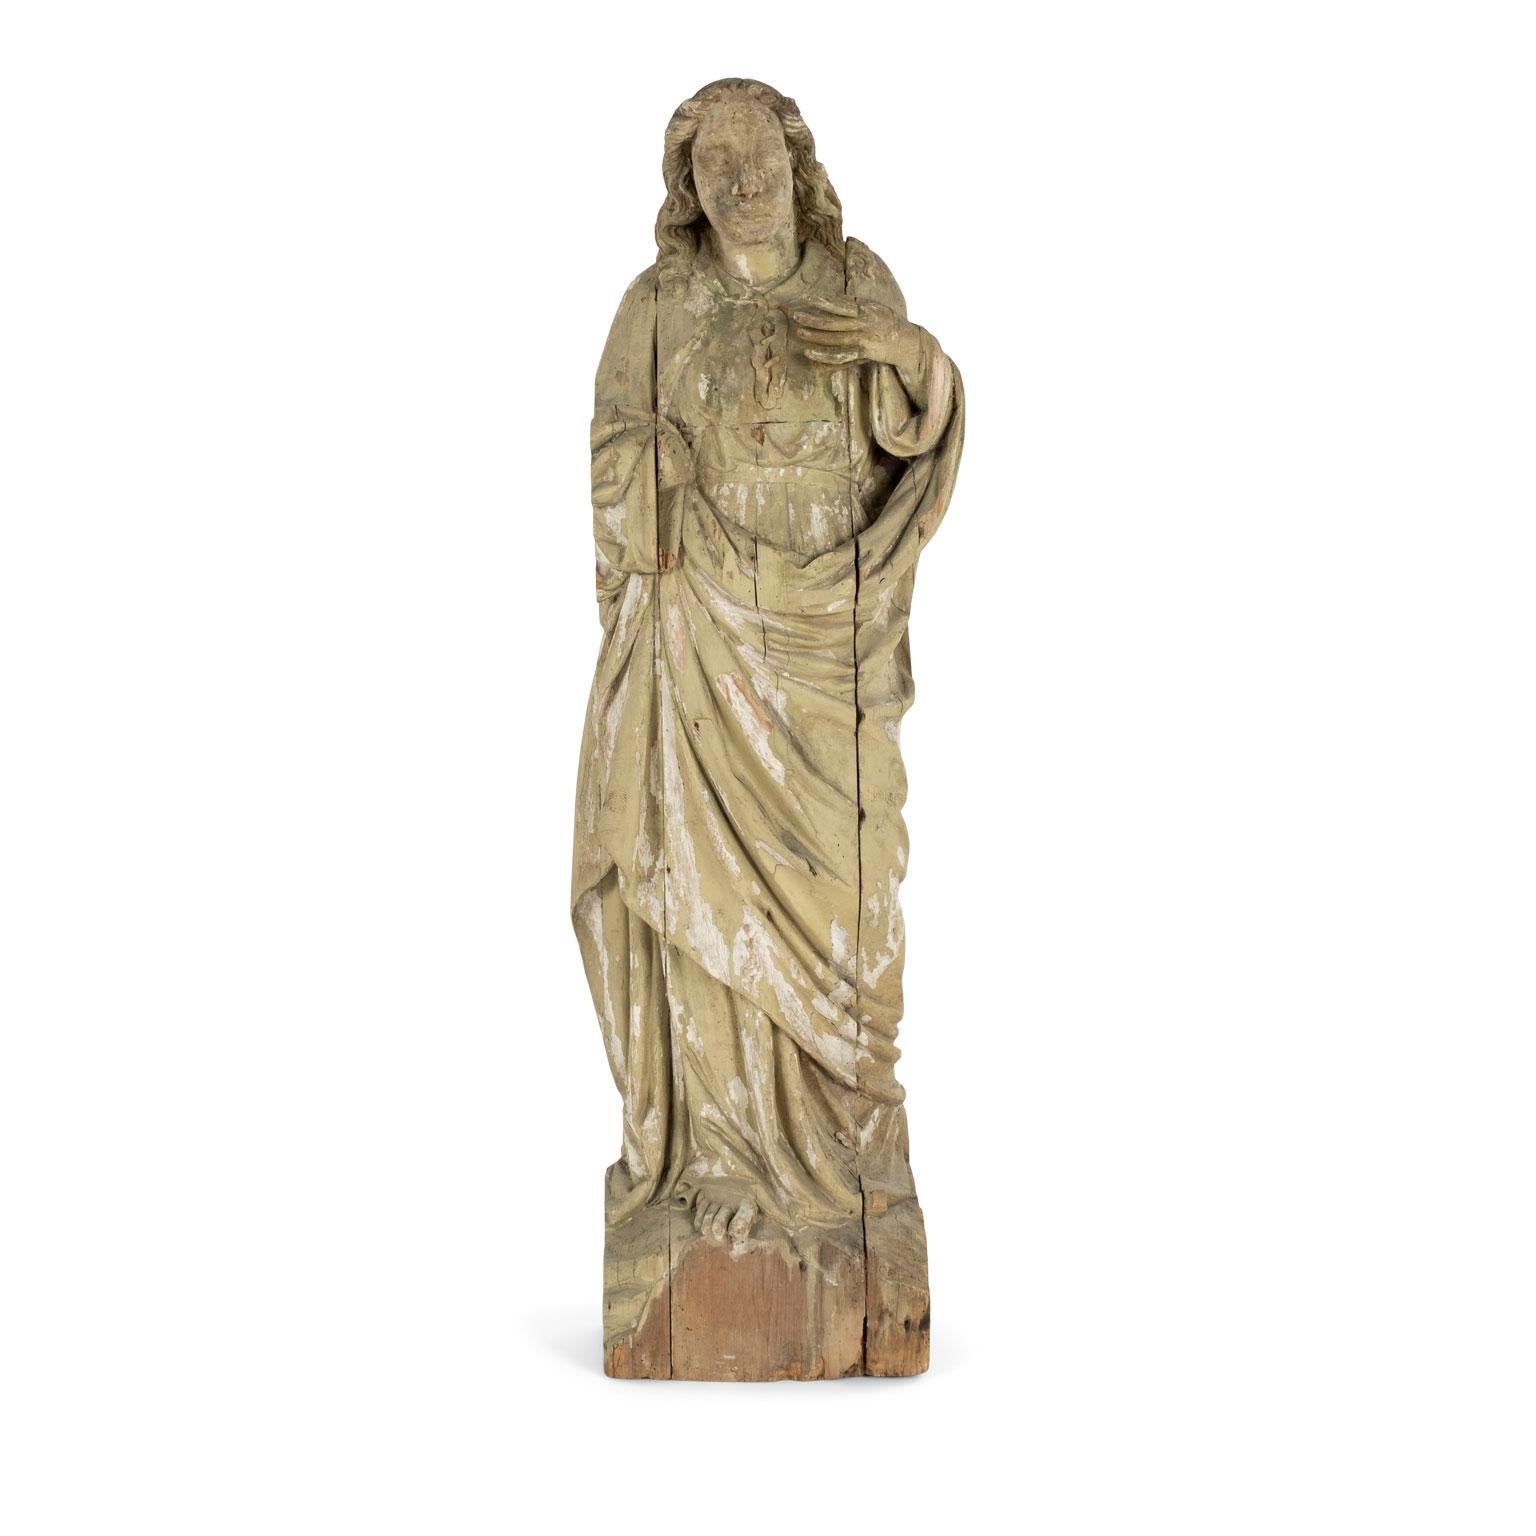 Große Statue eines Heiligen, handgeschnitzt aus Holz im späten 17. oder frühen 18. Einige Restaurierungen. Die Skulptur stellt einen Heiligen dar und wurde ursprünglich in einer Kirche oder Kathedrale aufgestellt.

Hinweis: Die ursprüngliche/frühe